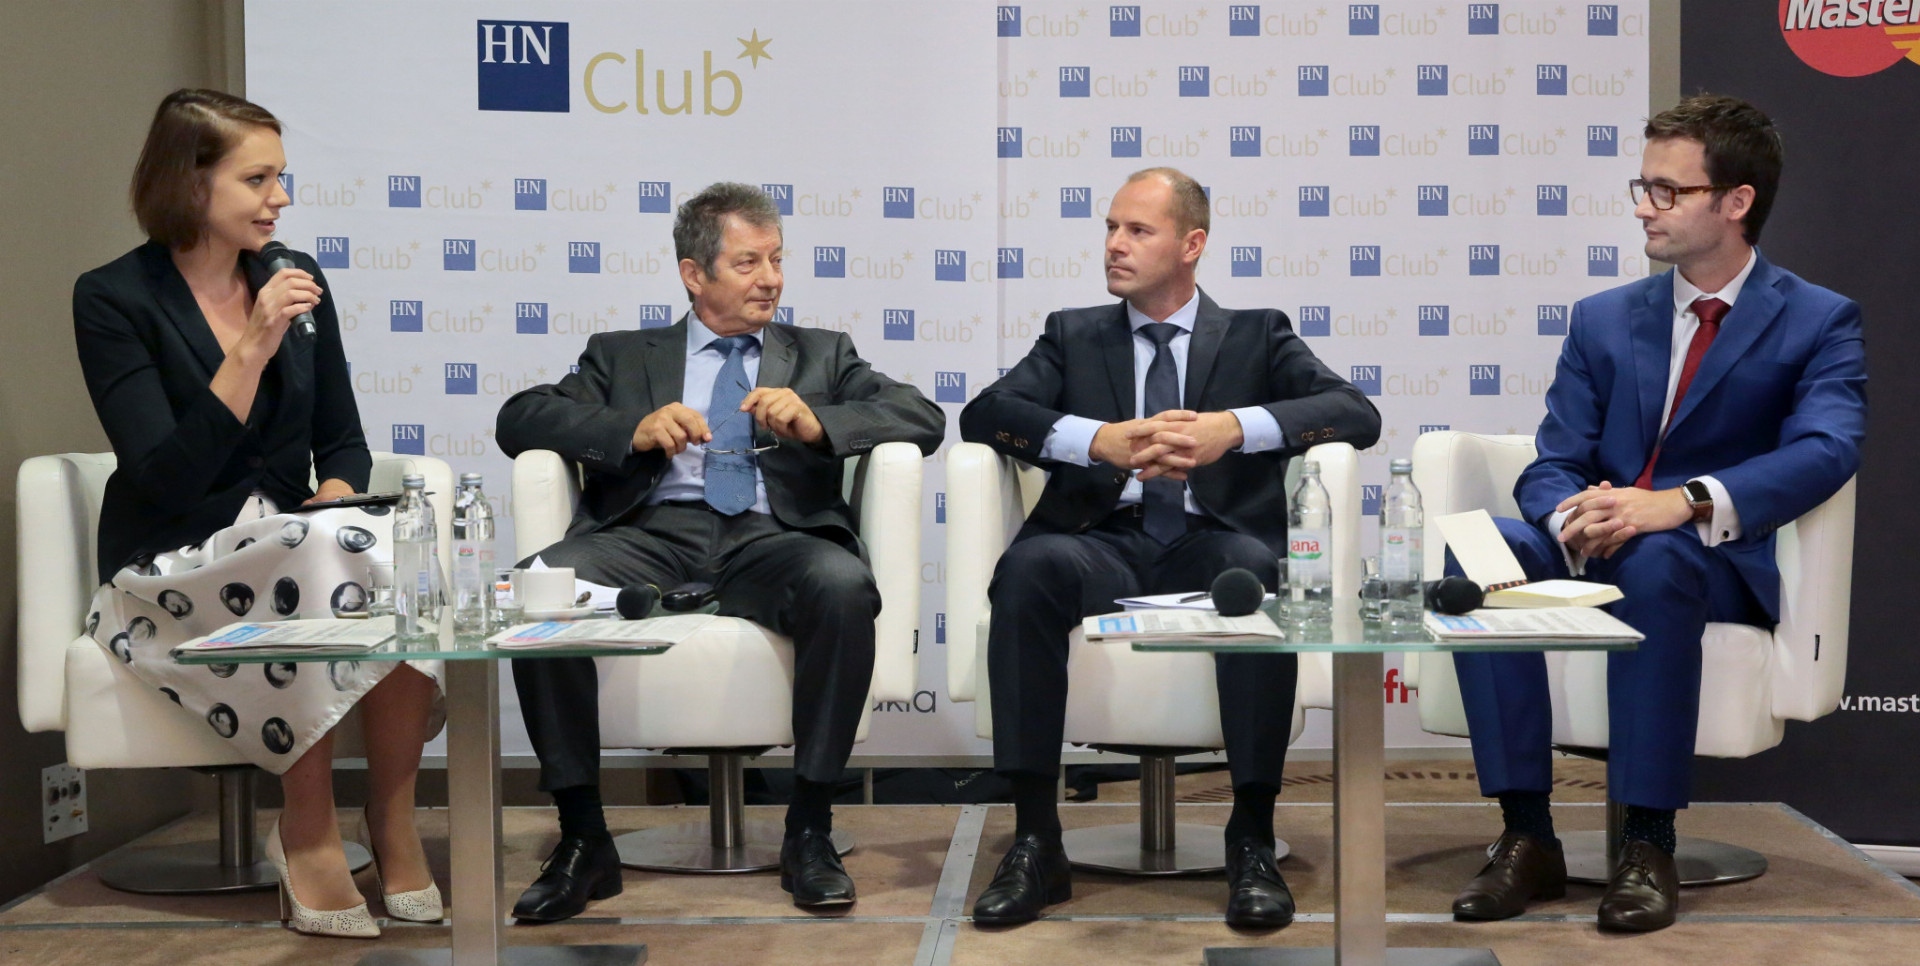 Na diskusii, ktorú viedla šéfredaktorka HN Marcela Šimková, sa zúčastnili (zľava) Štefan Petrík, Marek Harbuľák a Michal Čarný.